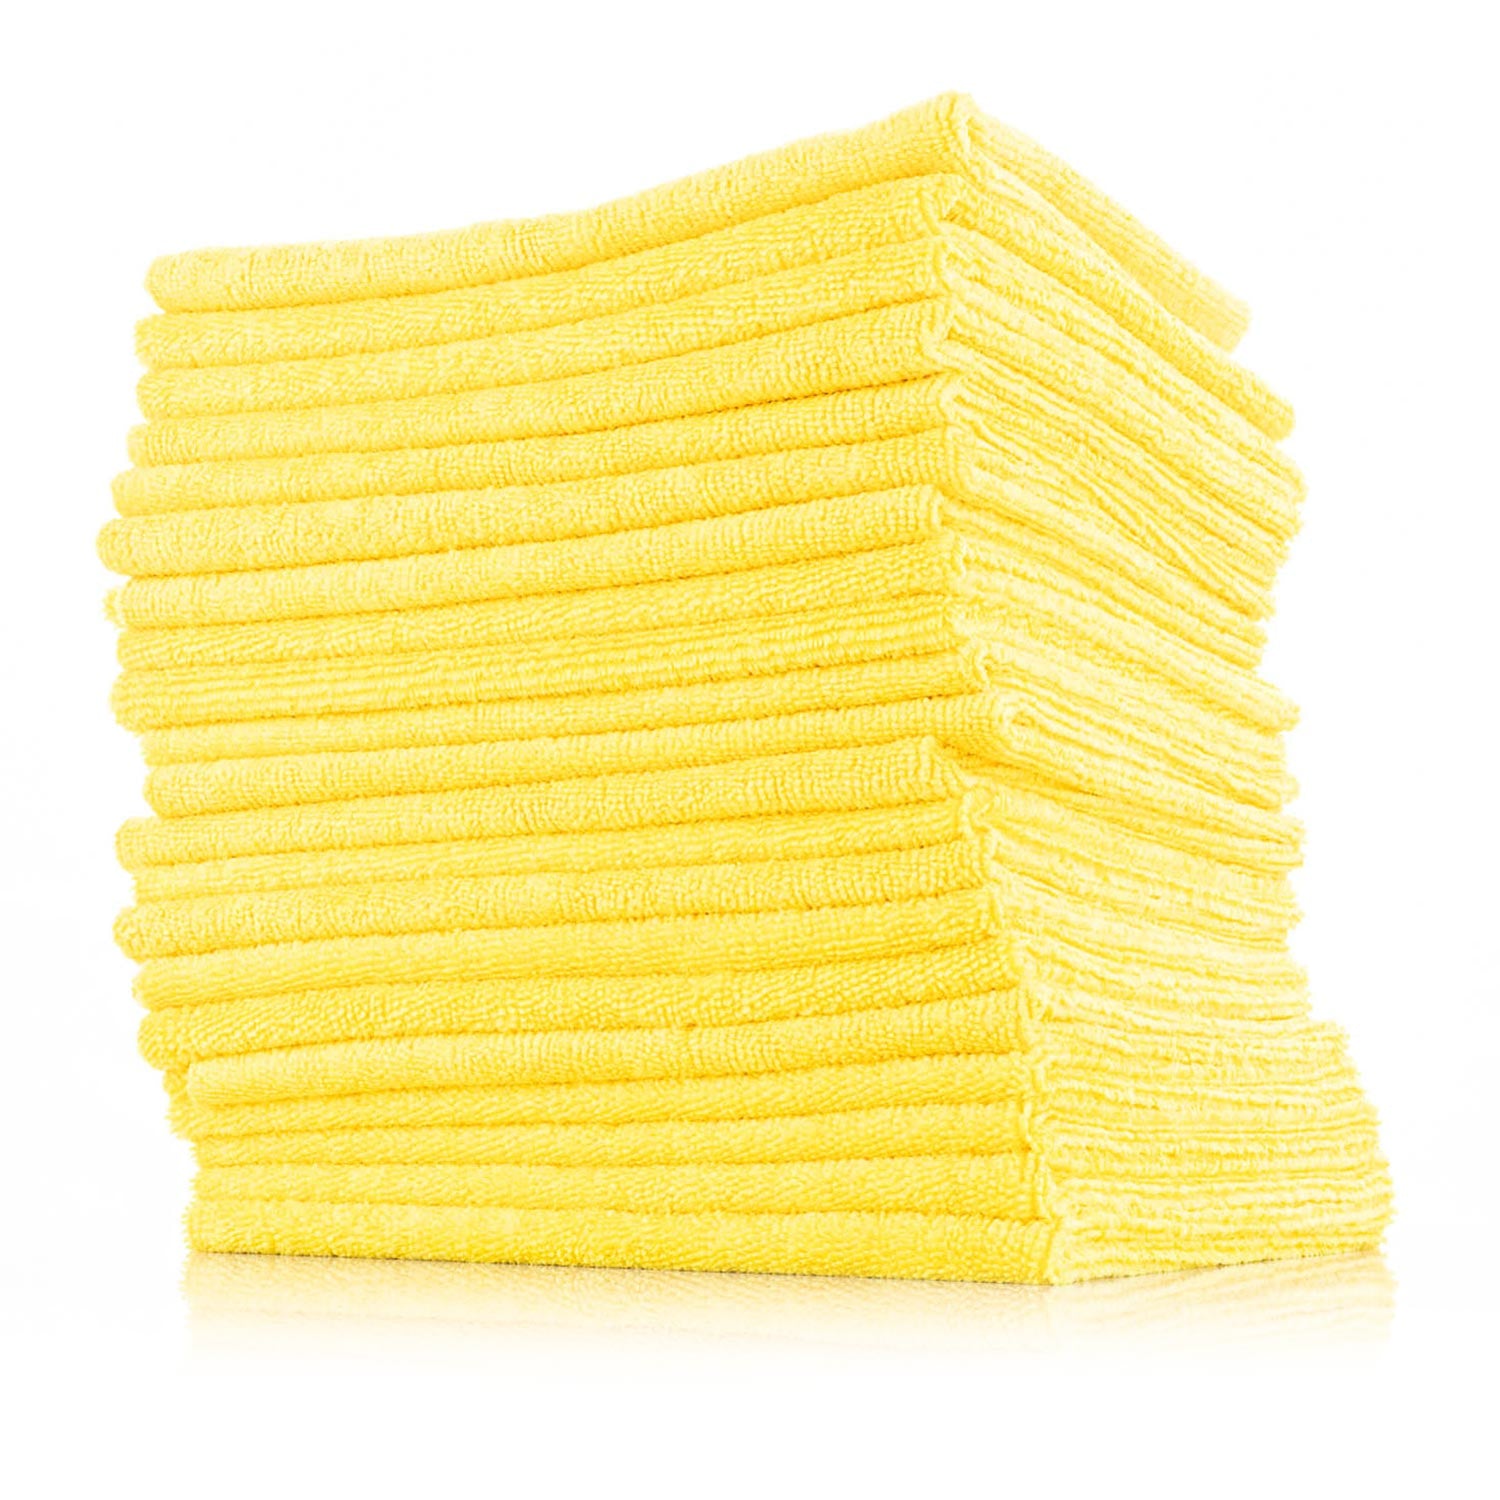 Microfiber Elite Jumbo Super Absorbent Drying Towel, 380 GSM, 36x 24,  Golden Yellow / Black Trim